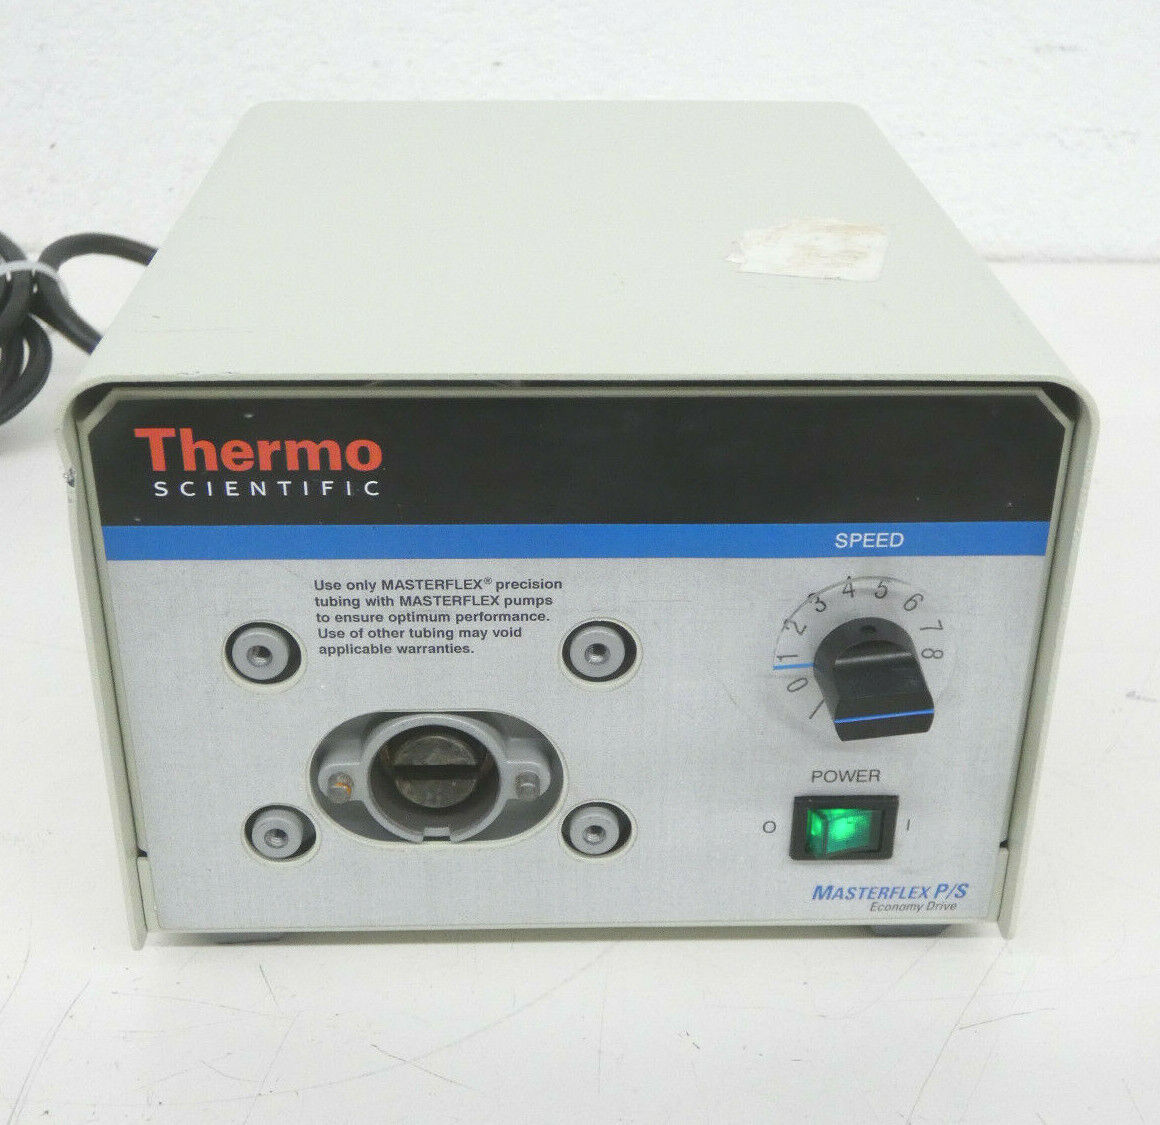 Thermo Scientific 900-1481 Masterflex P/s Economy Drive, 6-600 Rpm